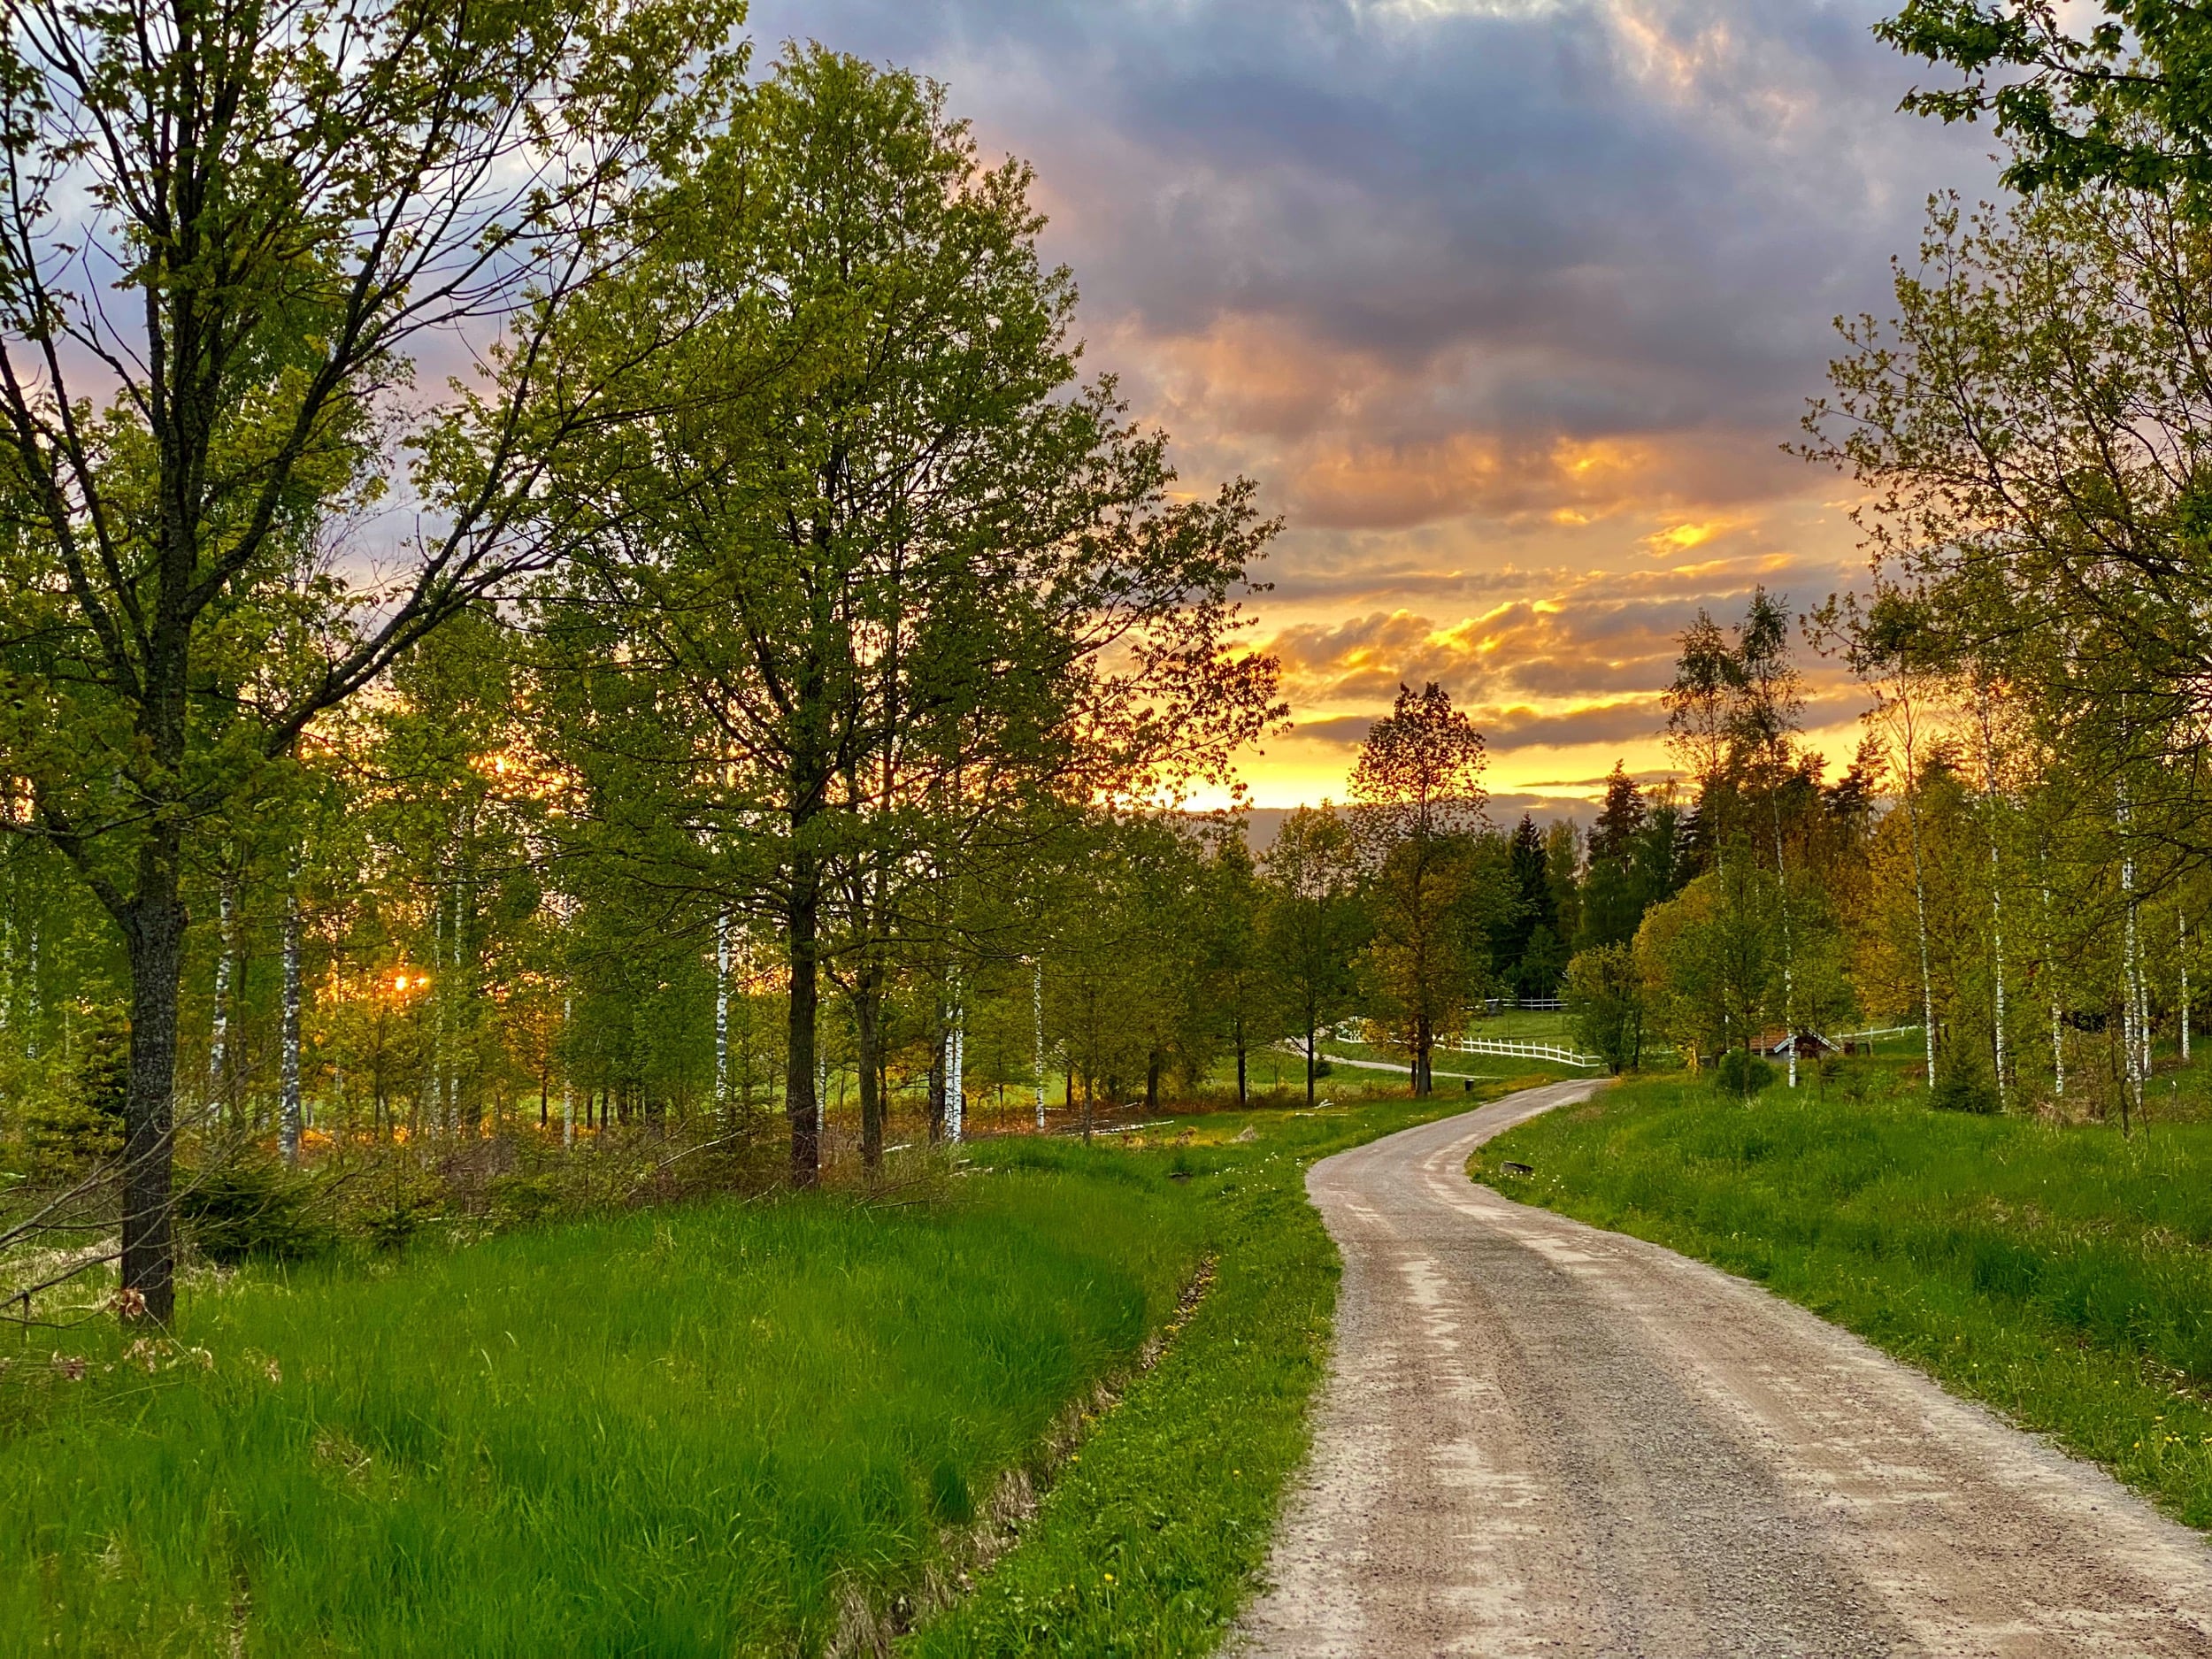 Fjärdhundraland, small road at sunset